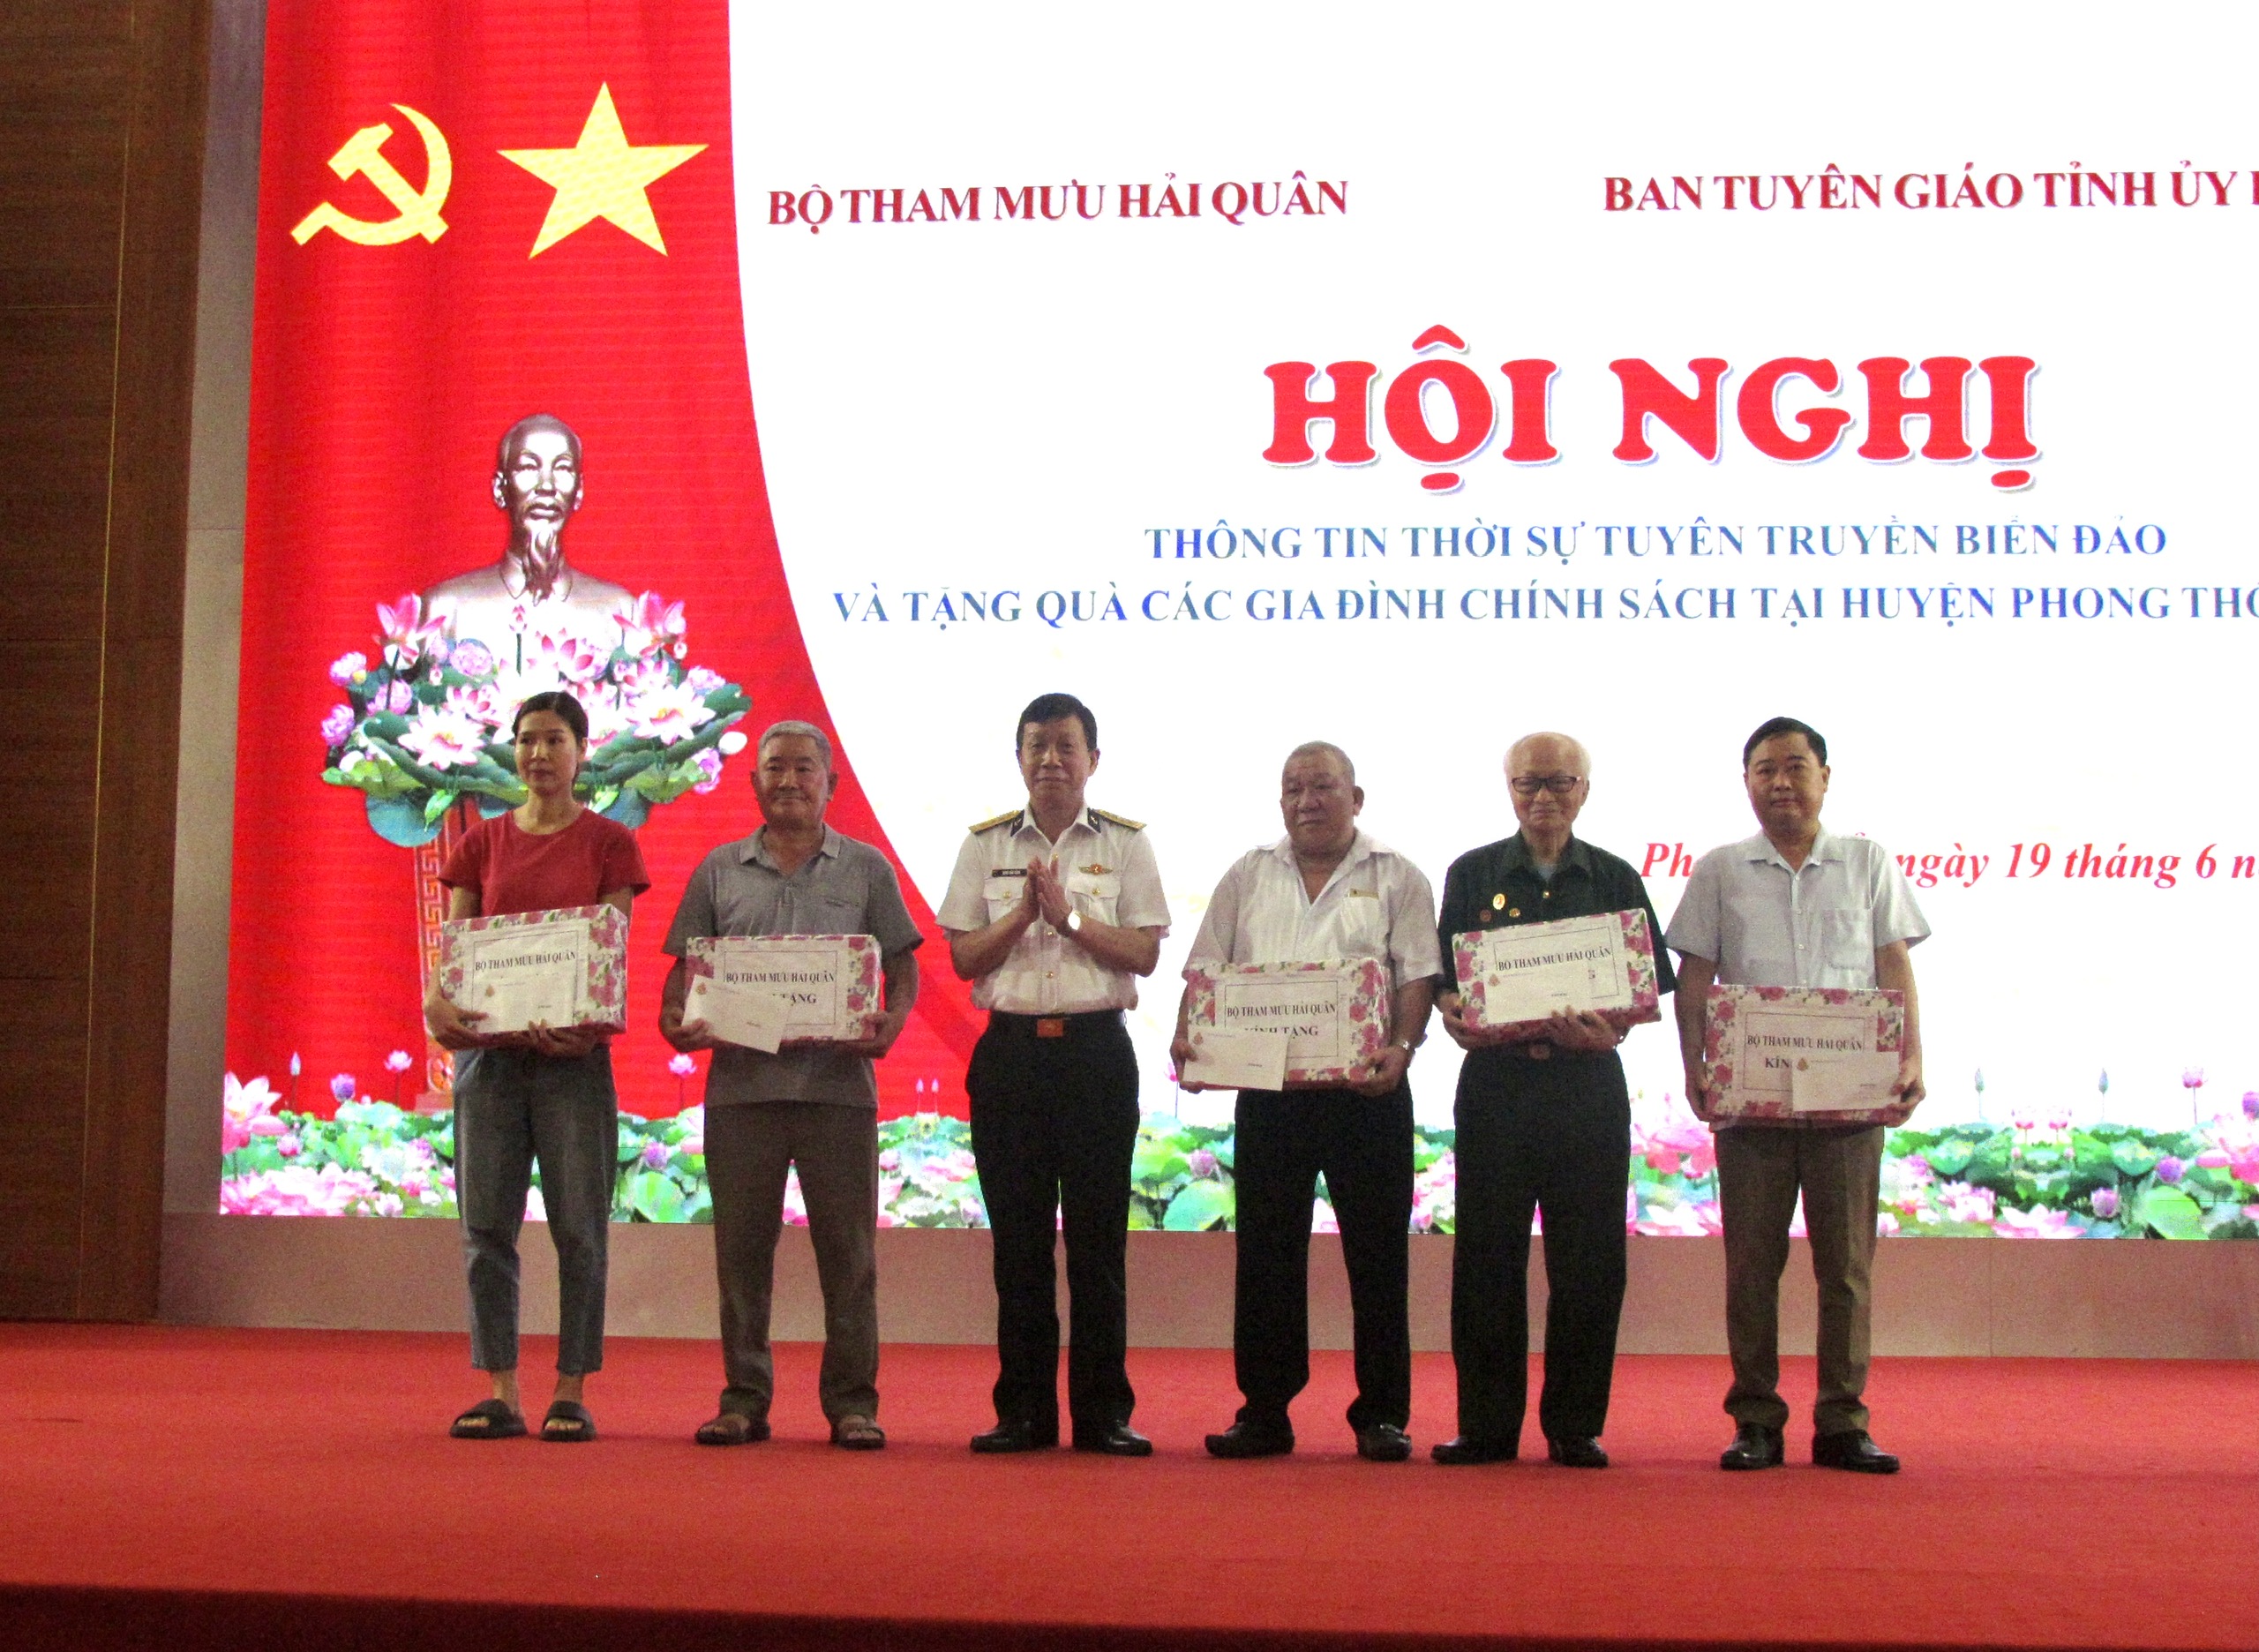 Đại tá Đặng Văn Cảnh - Phó Chủ nhiệm Chính trị Bộ Tham mưu quân chủng Hải quân trao quà cho các gia đình chính sách